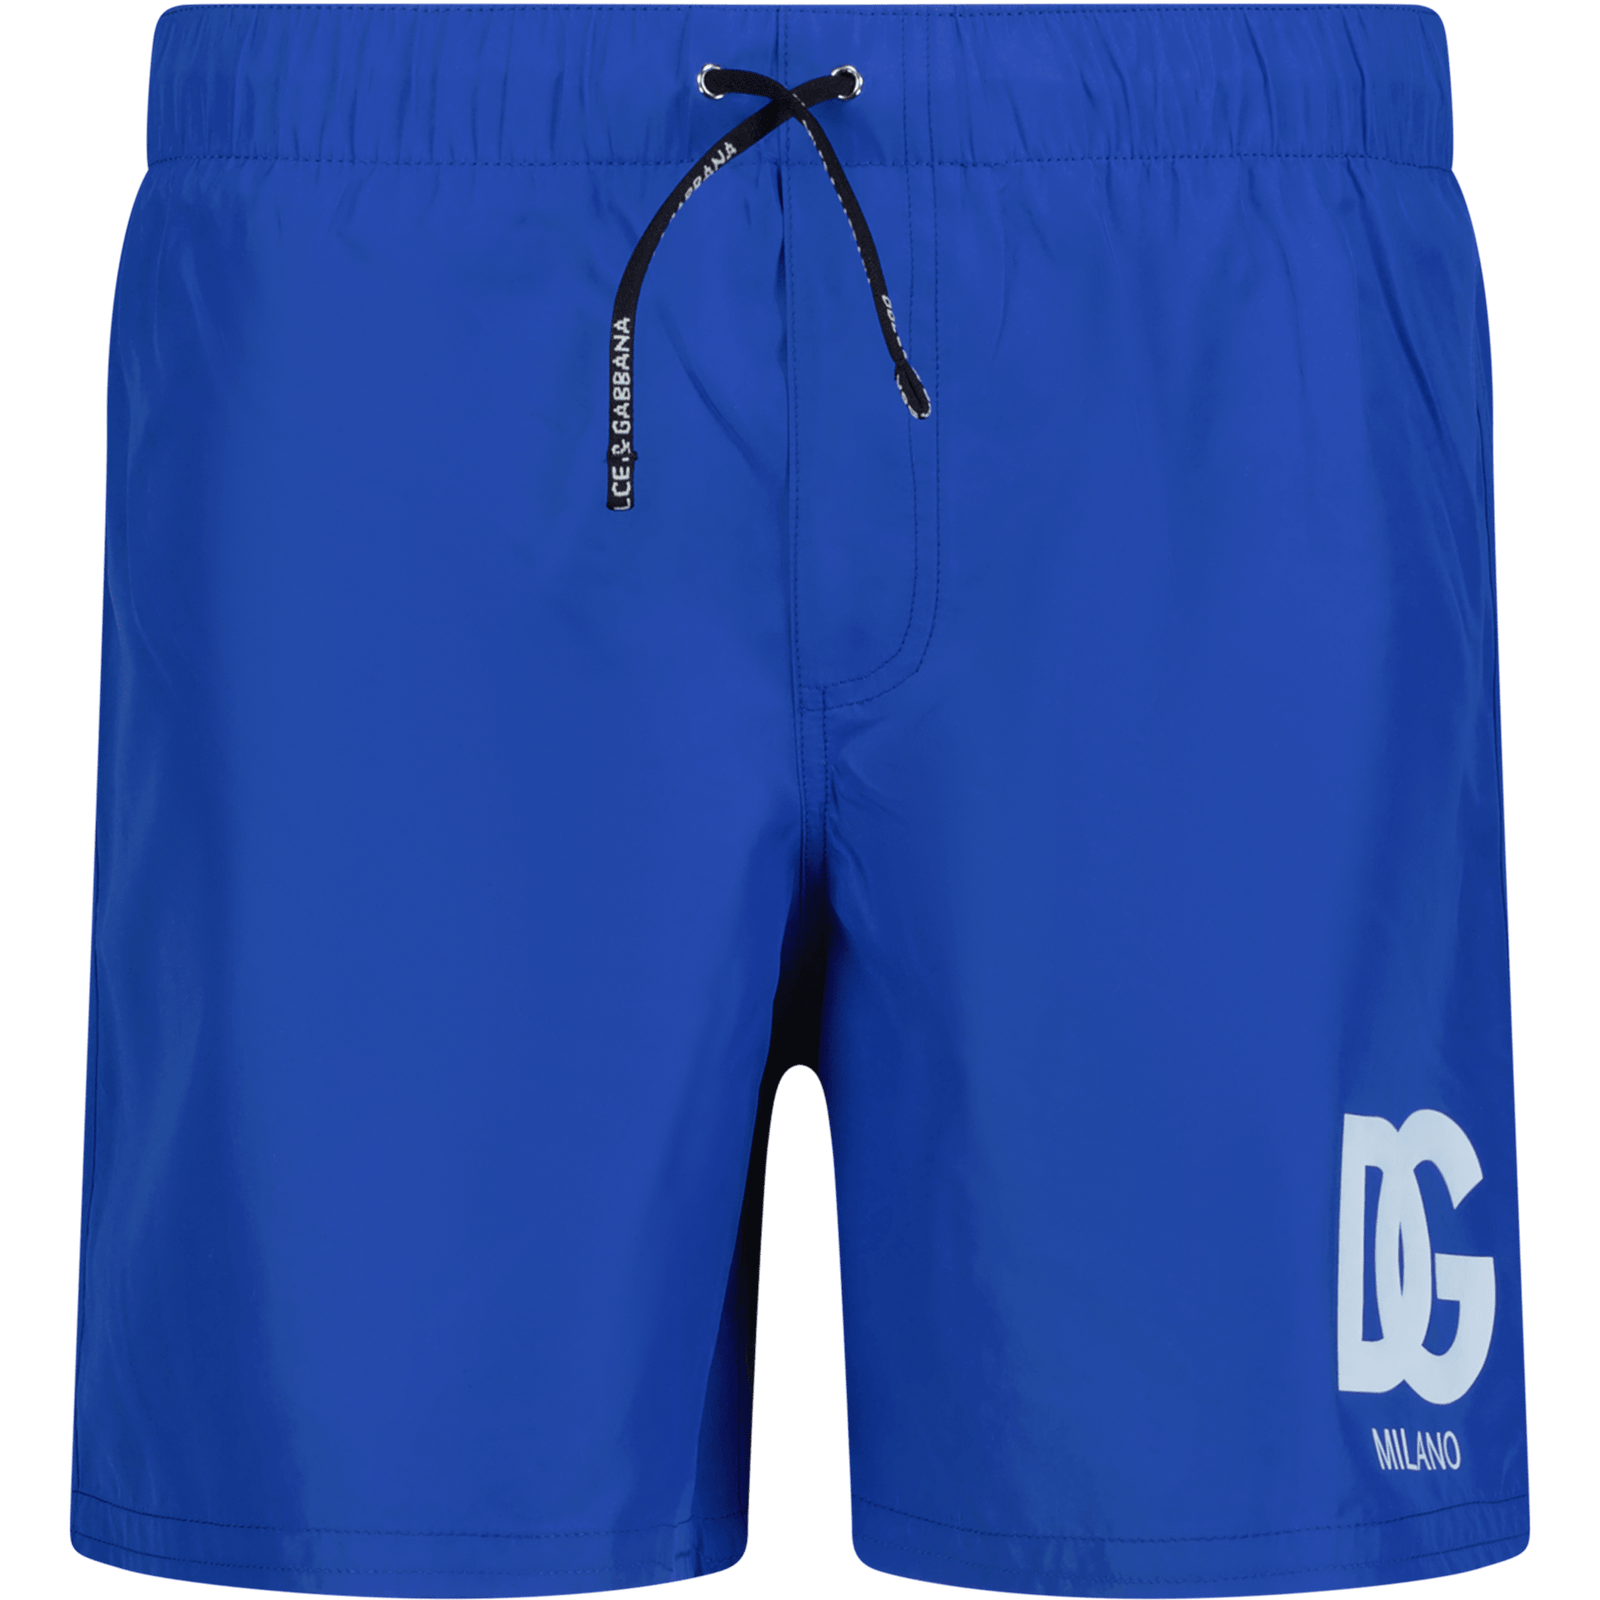 Dolce & Gabbana Kinder Zwemkleding Cobalt Blauw 2Y